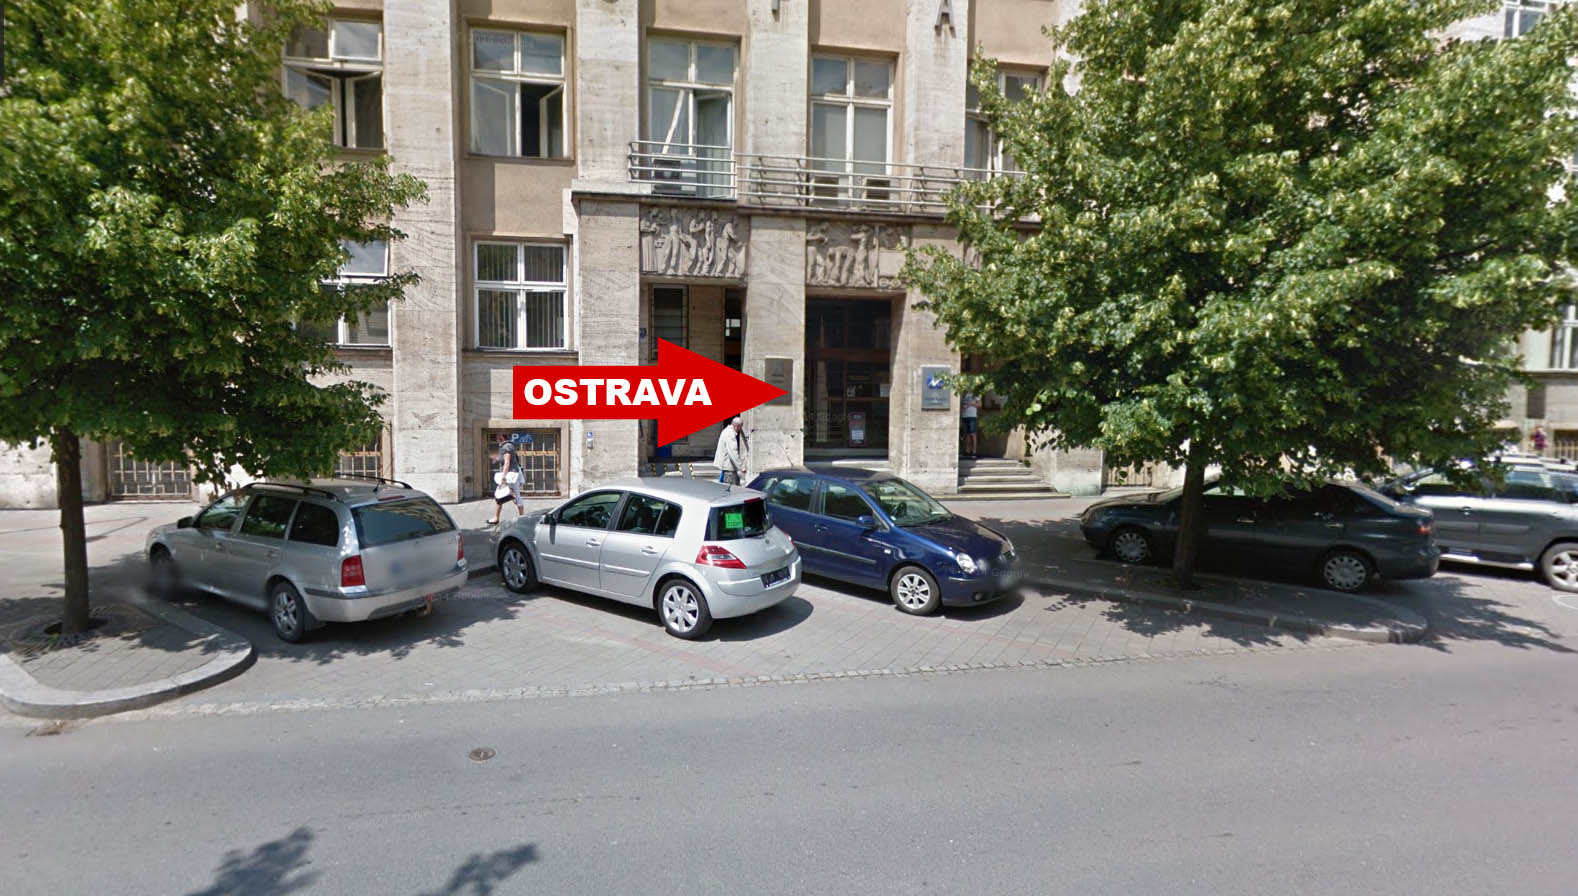 Platba za testy v Ostravě a záverečné zkoušky Autoškola Olda - Ostrava, Hlučín